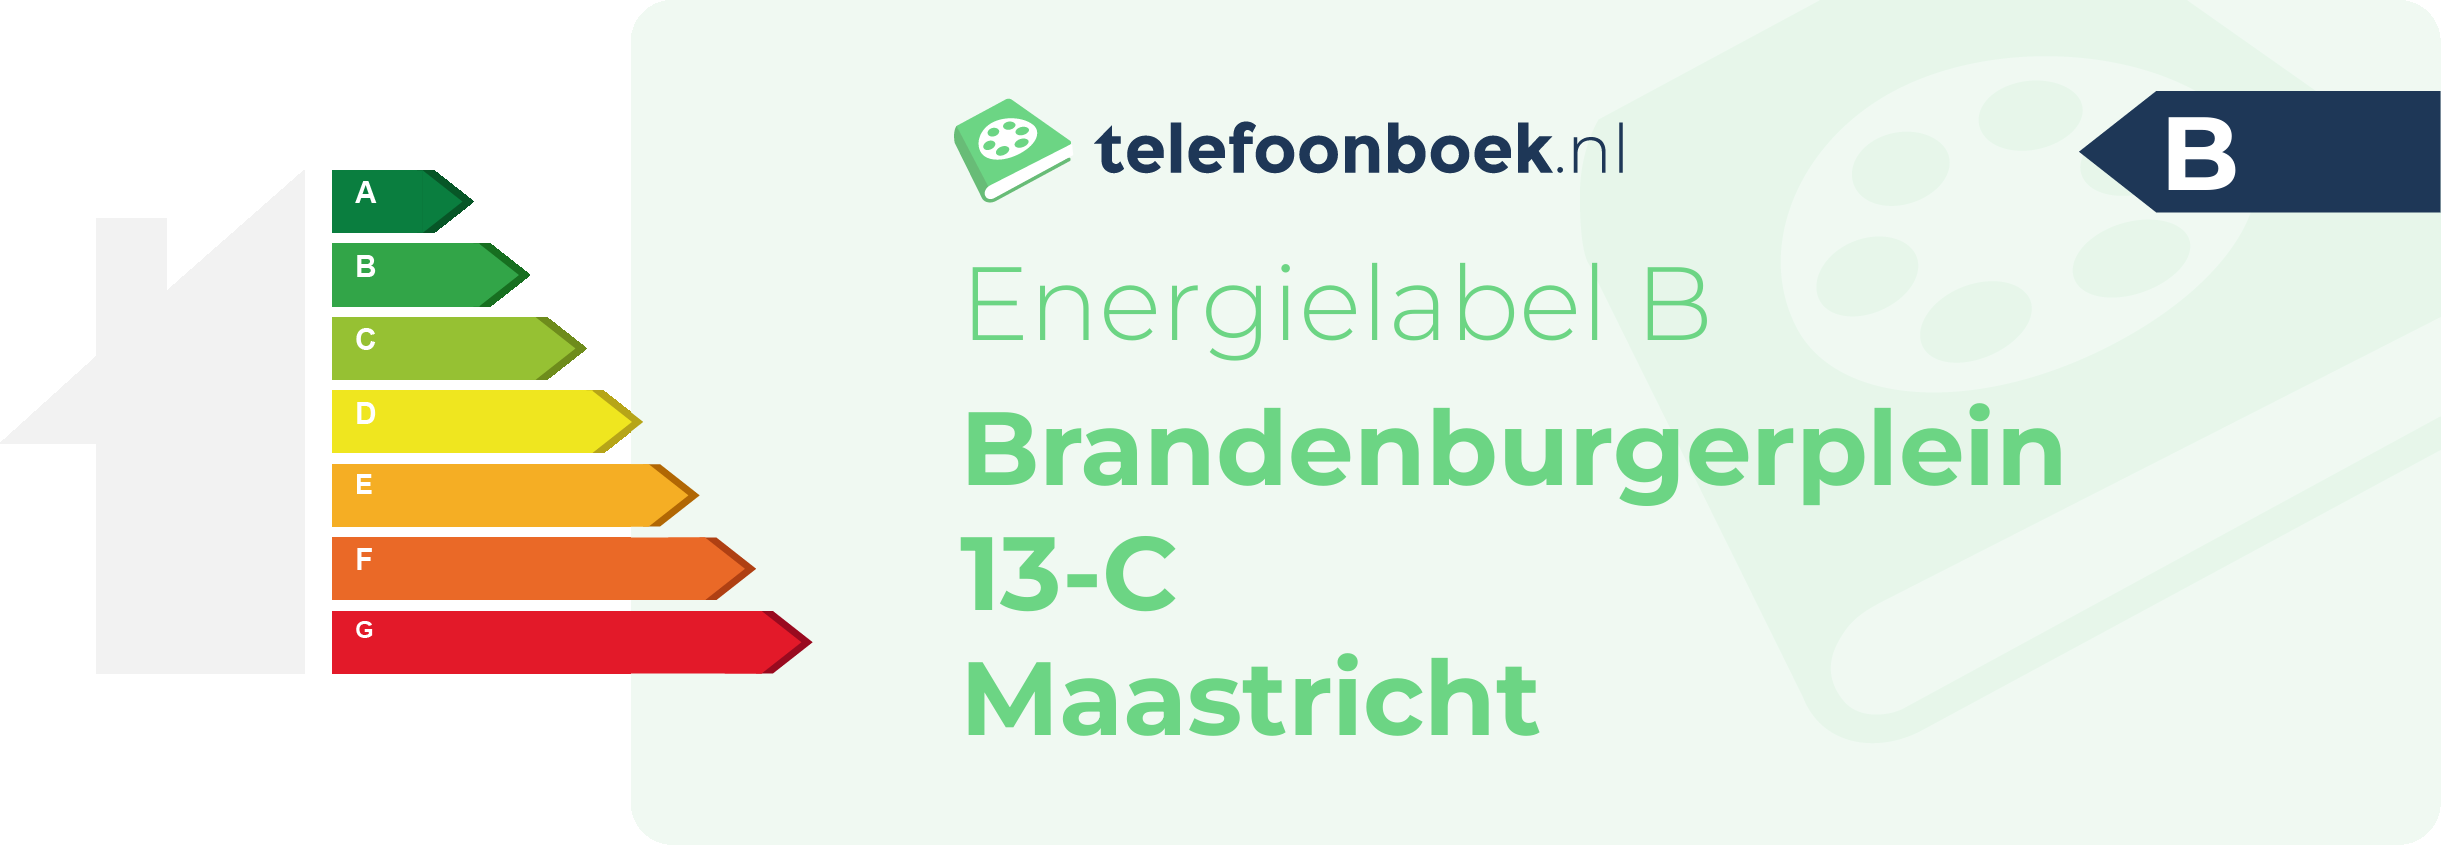 Energielabel Brandenburgerplein 13-C Maastricht